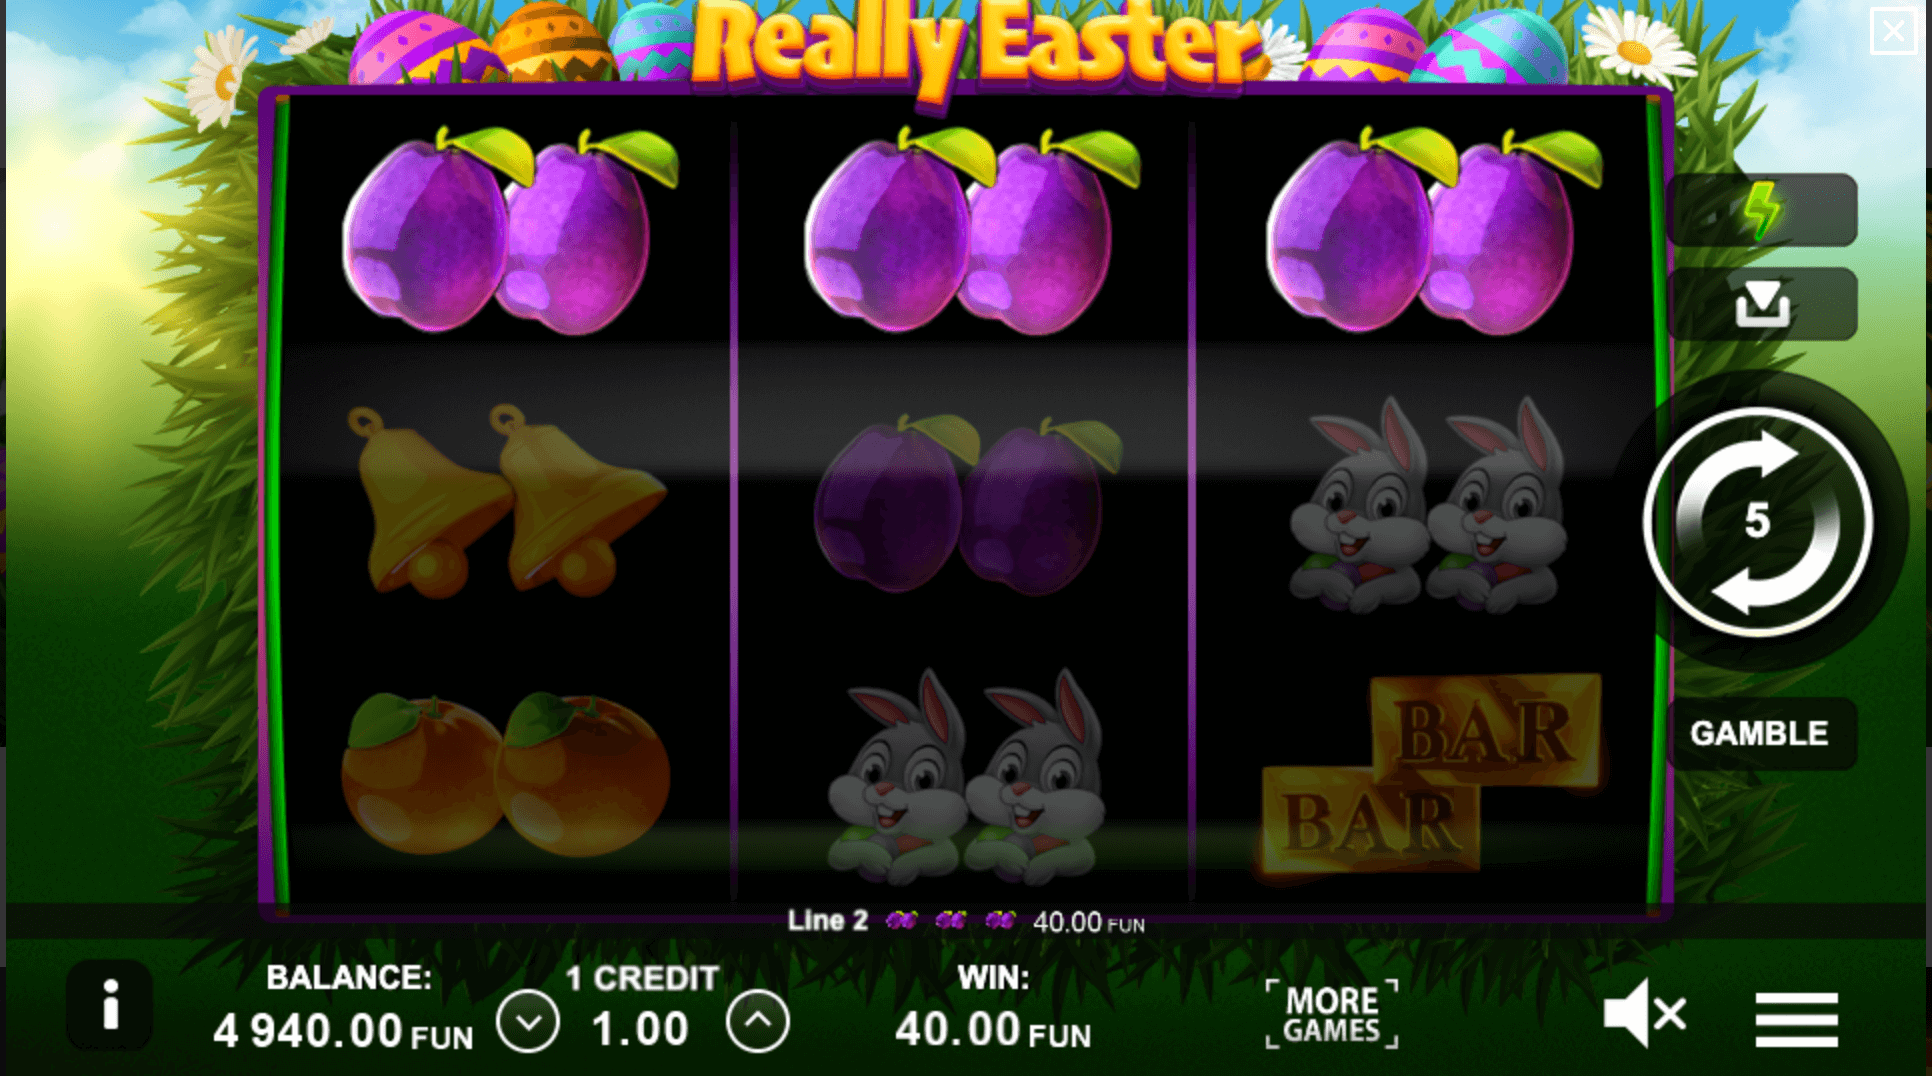 Really Easter Processo do jogo